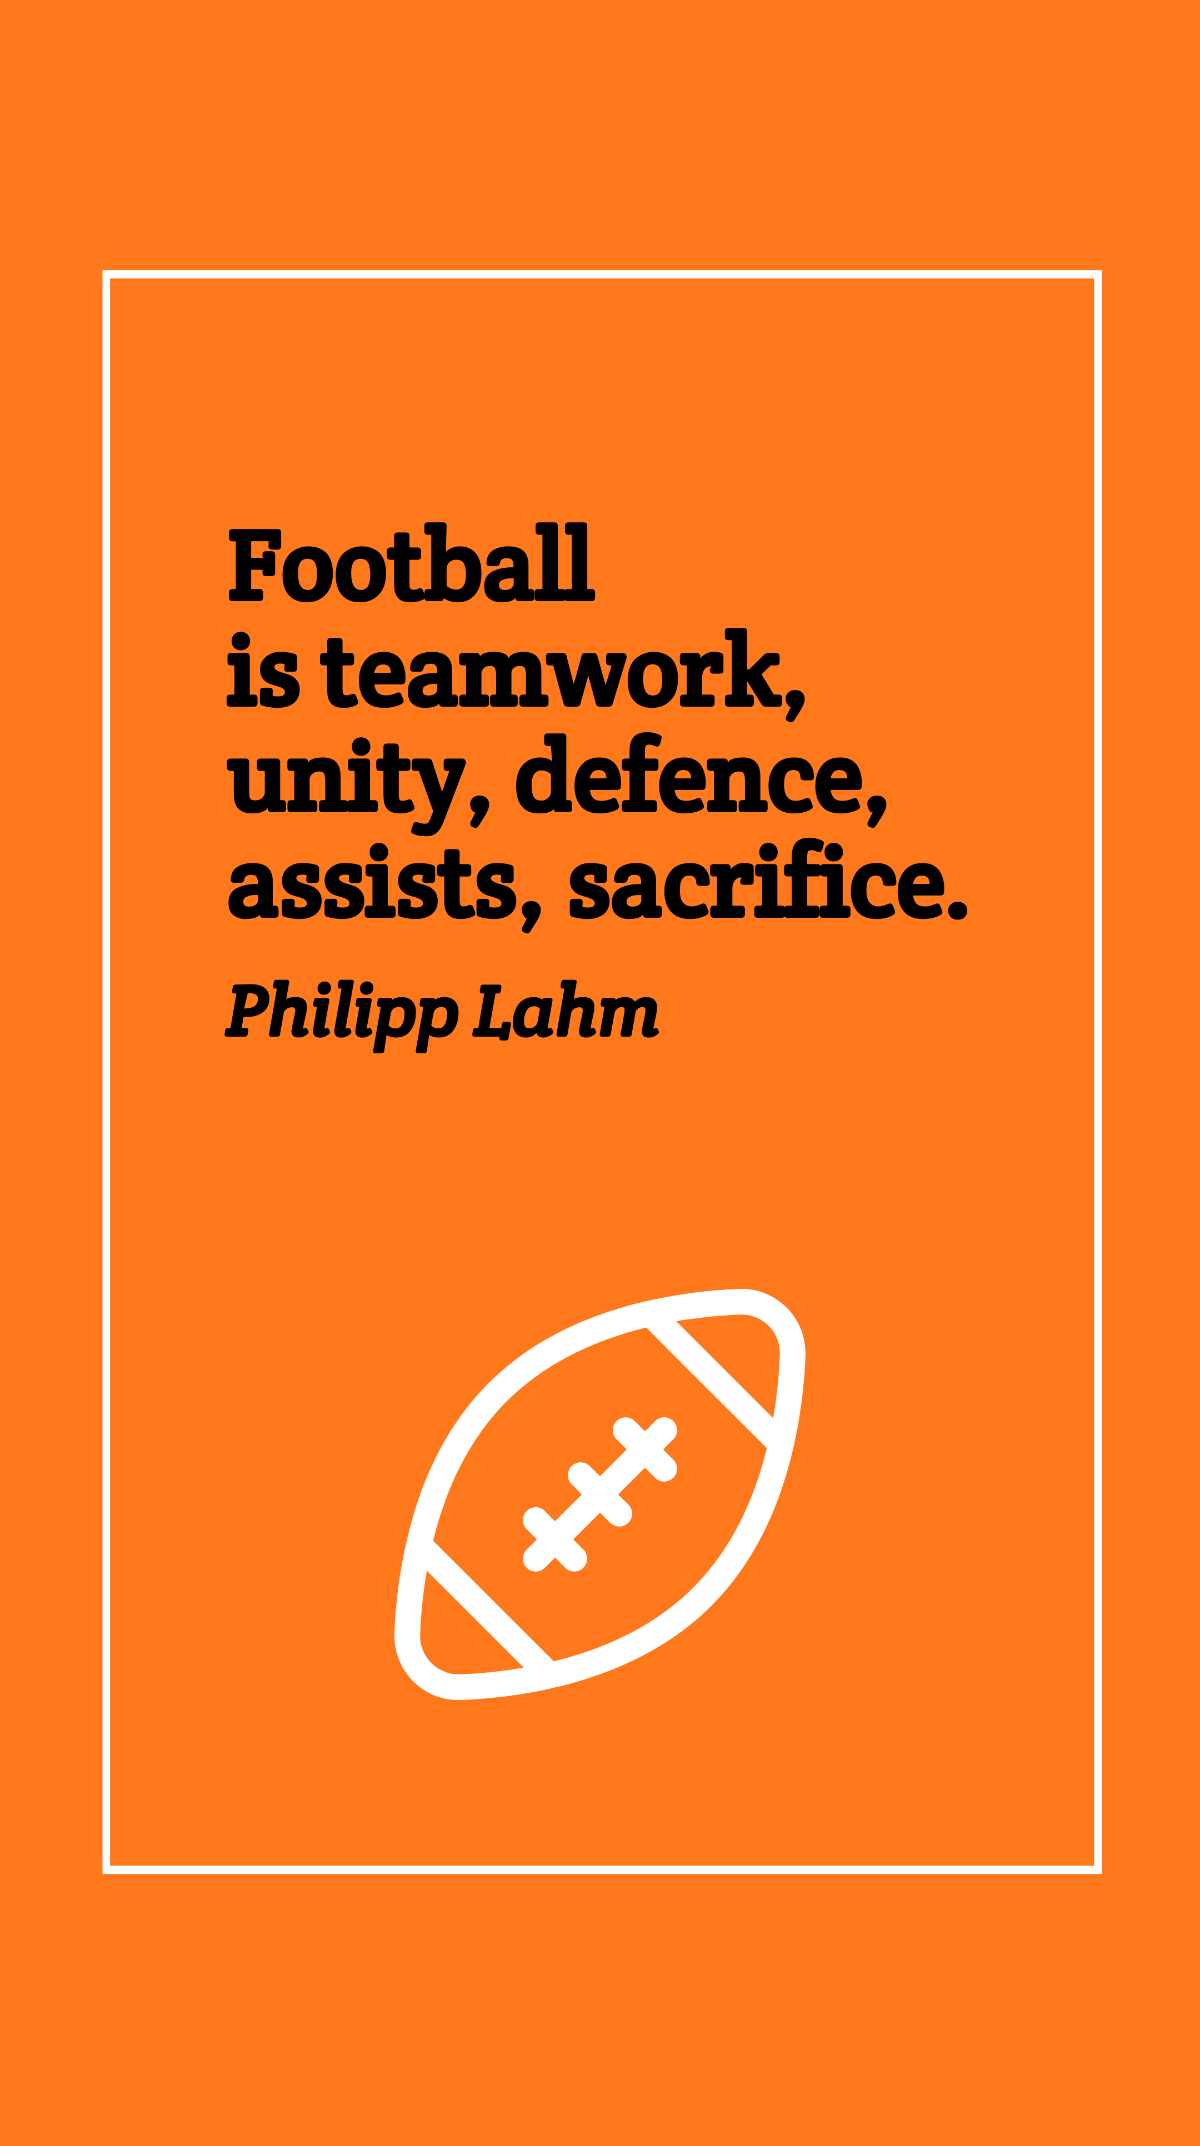 Free Philipp Lahm - Football is teamwork, unity, defence, assists, sacrifice. Template